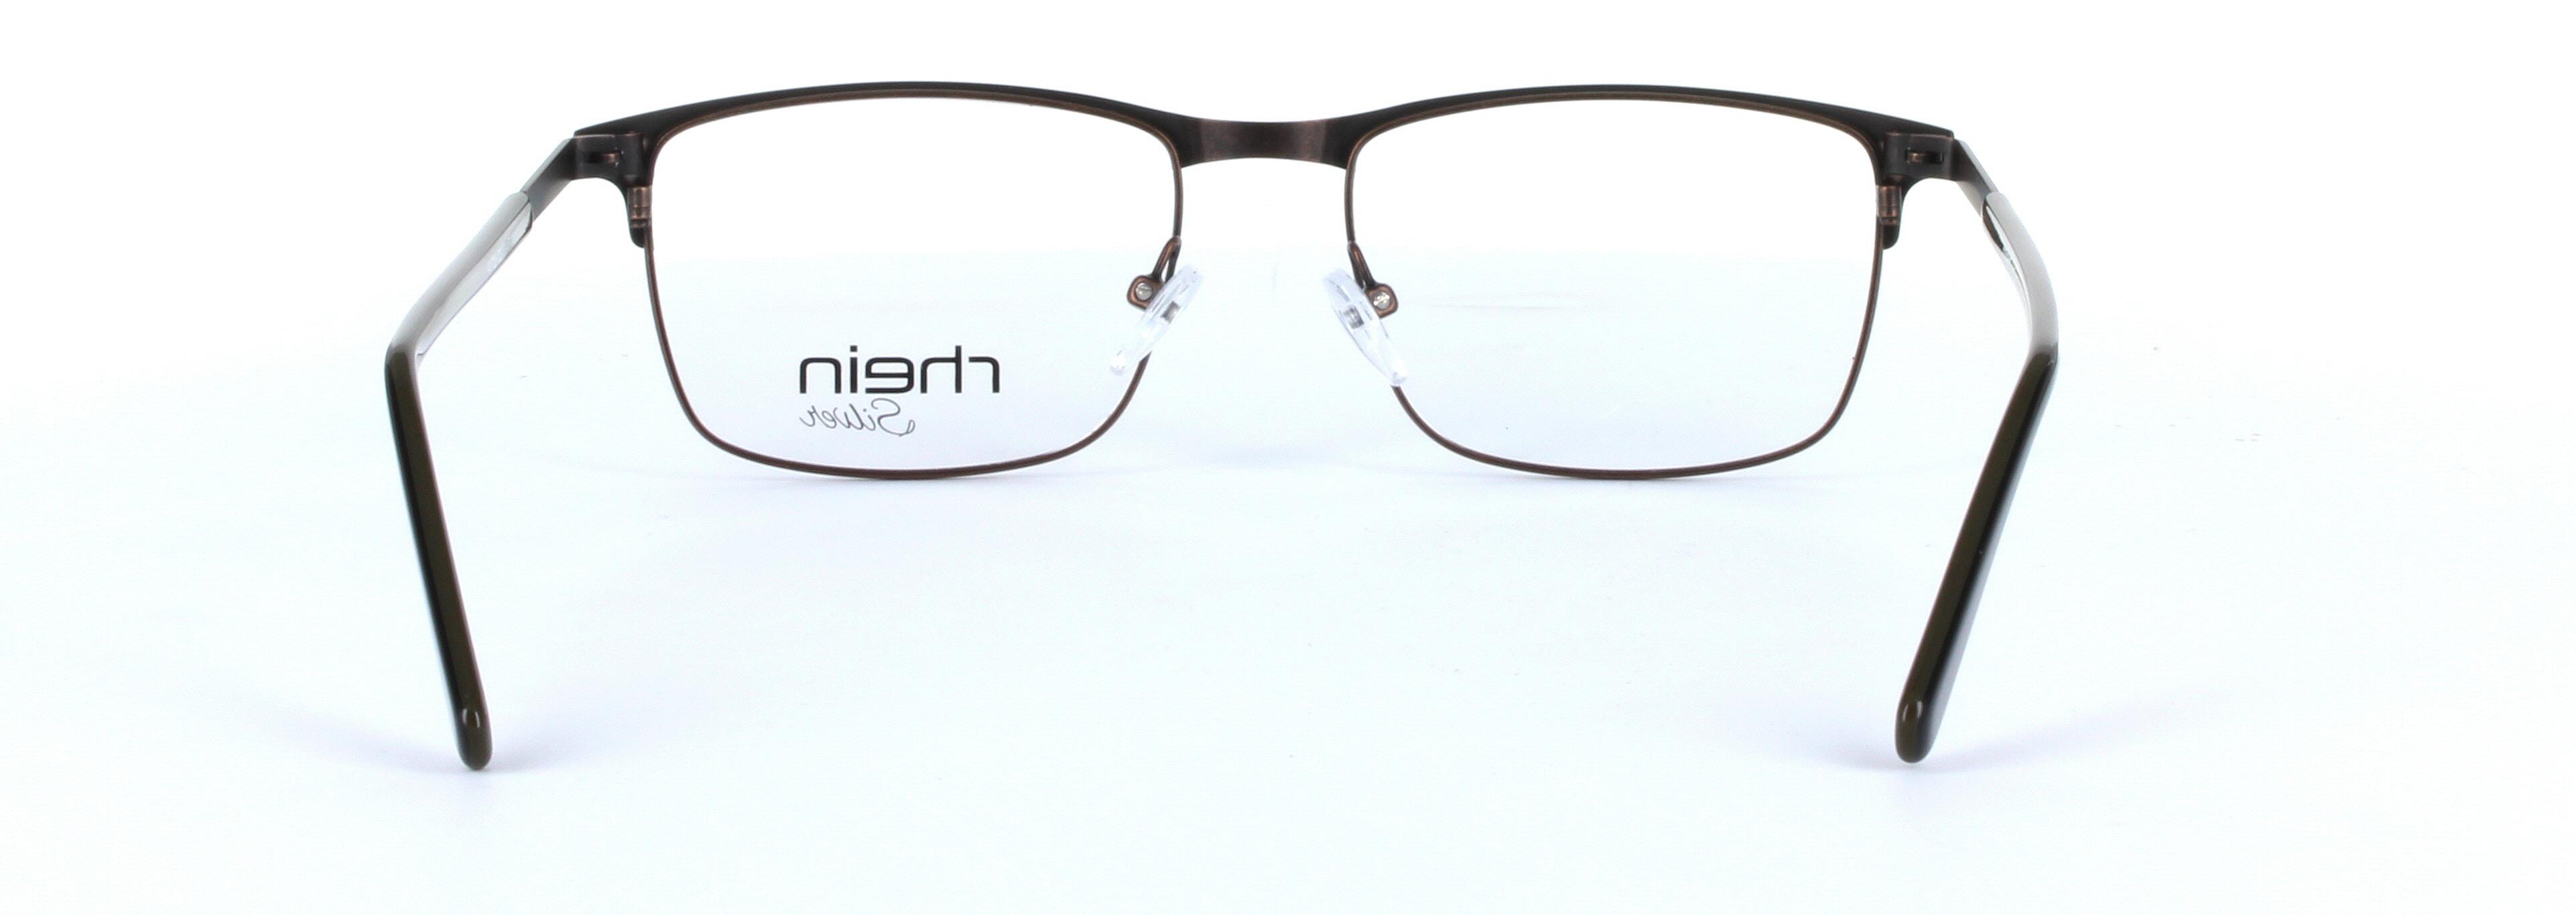 Aries Brown Full Rim Oval Metal Glasses - Image View 3